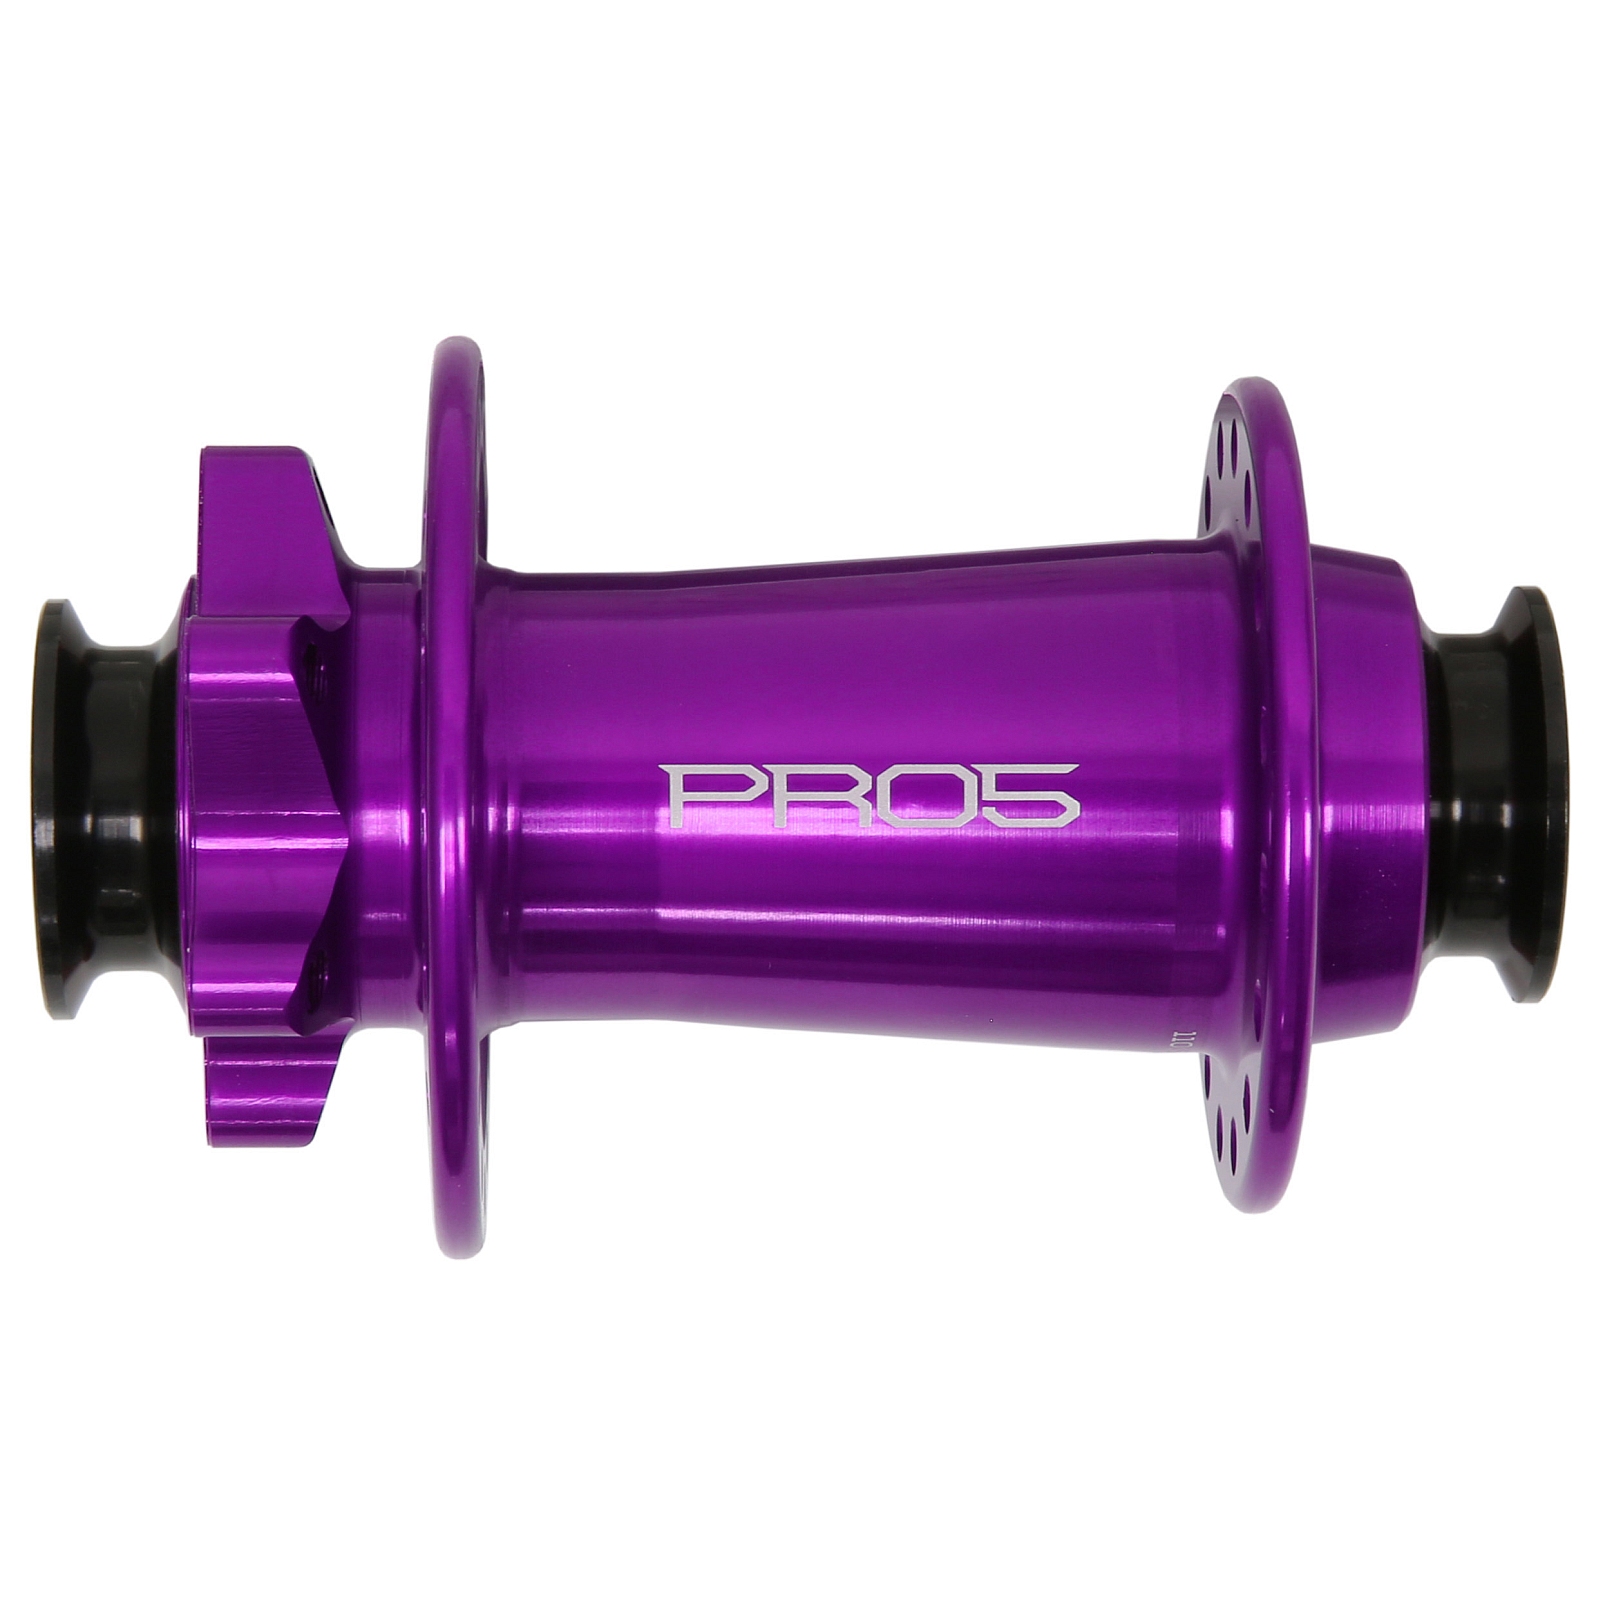 Produktbild von Hope Pro 5 Vorderradnabe - 6-Bolt - 15x110mm Boost Torque - lila